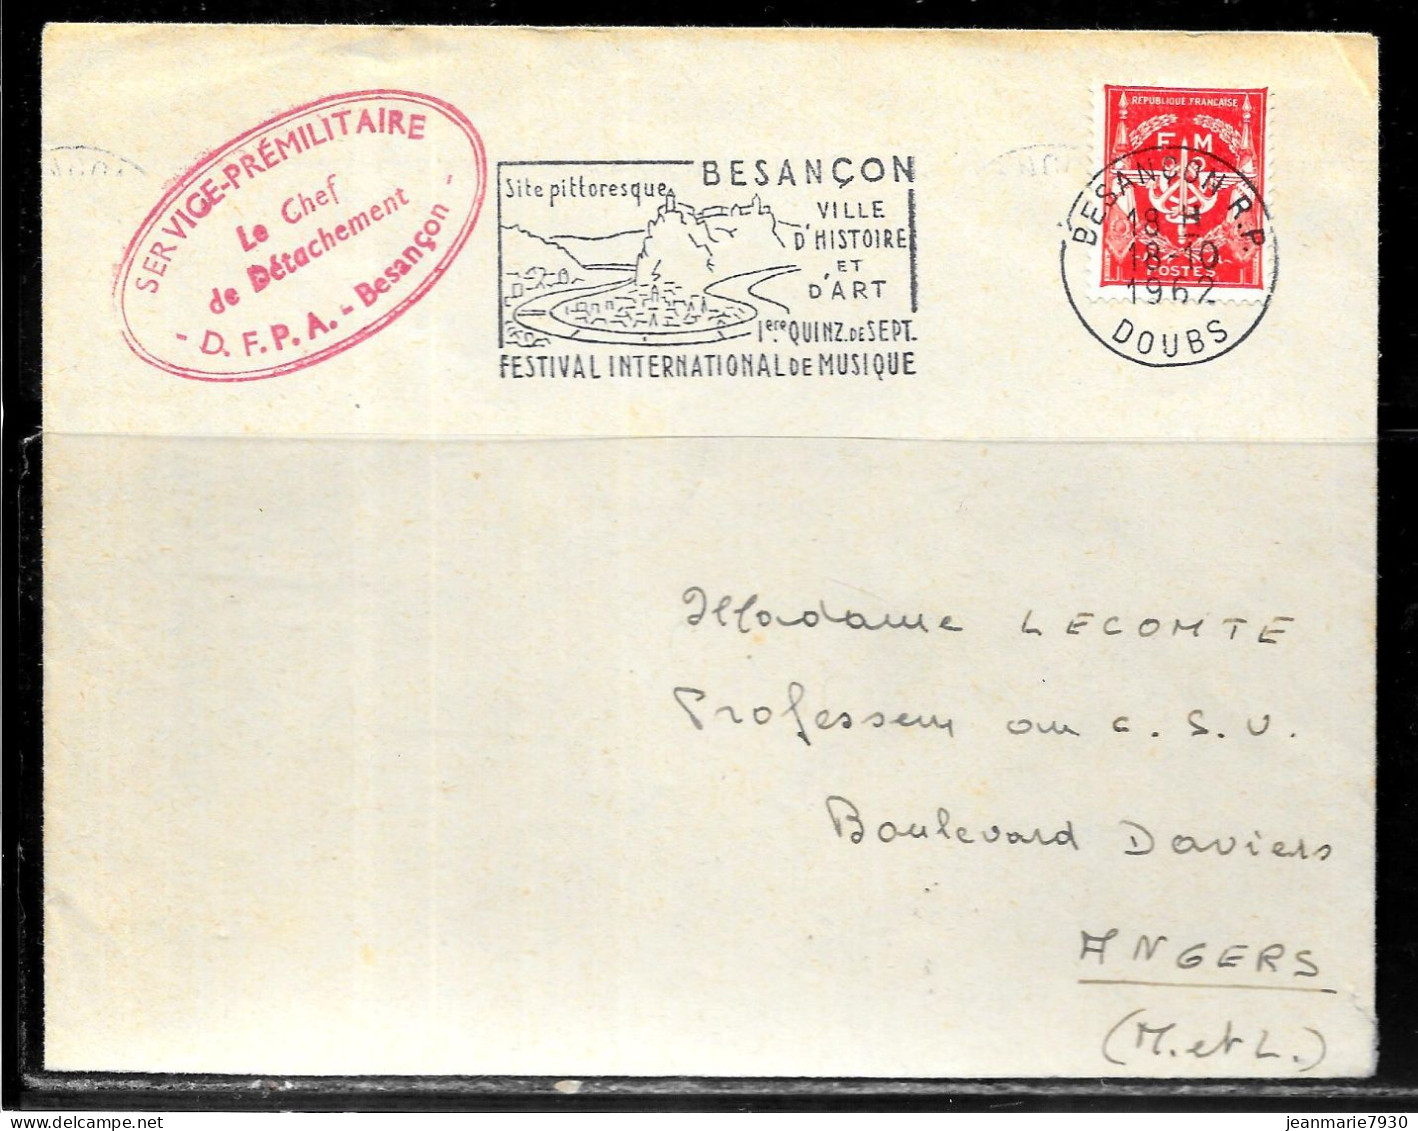 P259 - LETTRE EN FRANCHISE DE BESANCON DU 18/10/62 - CACHET CHEF DE DETACHEMENT D.F.P.A. - FLAMME FESTIVAL - Covers & Documents